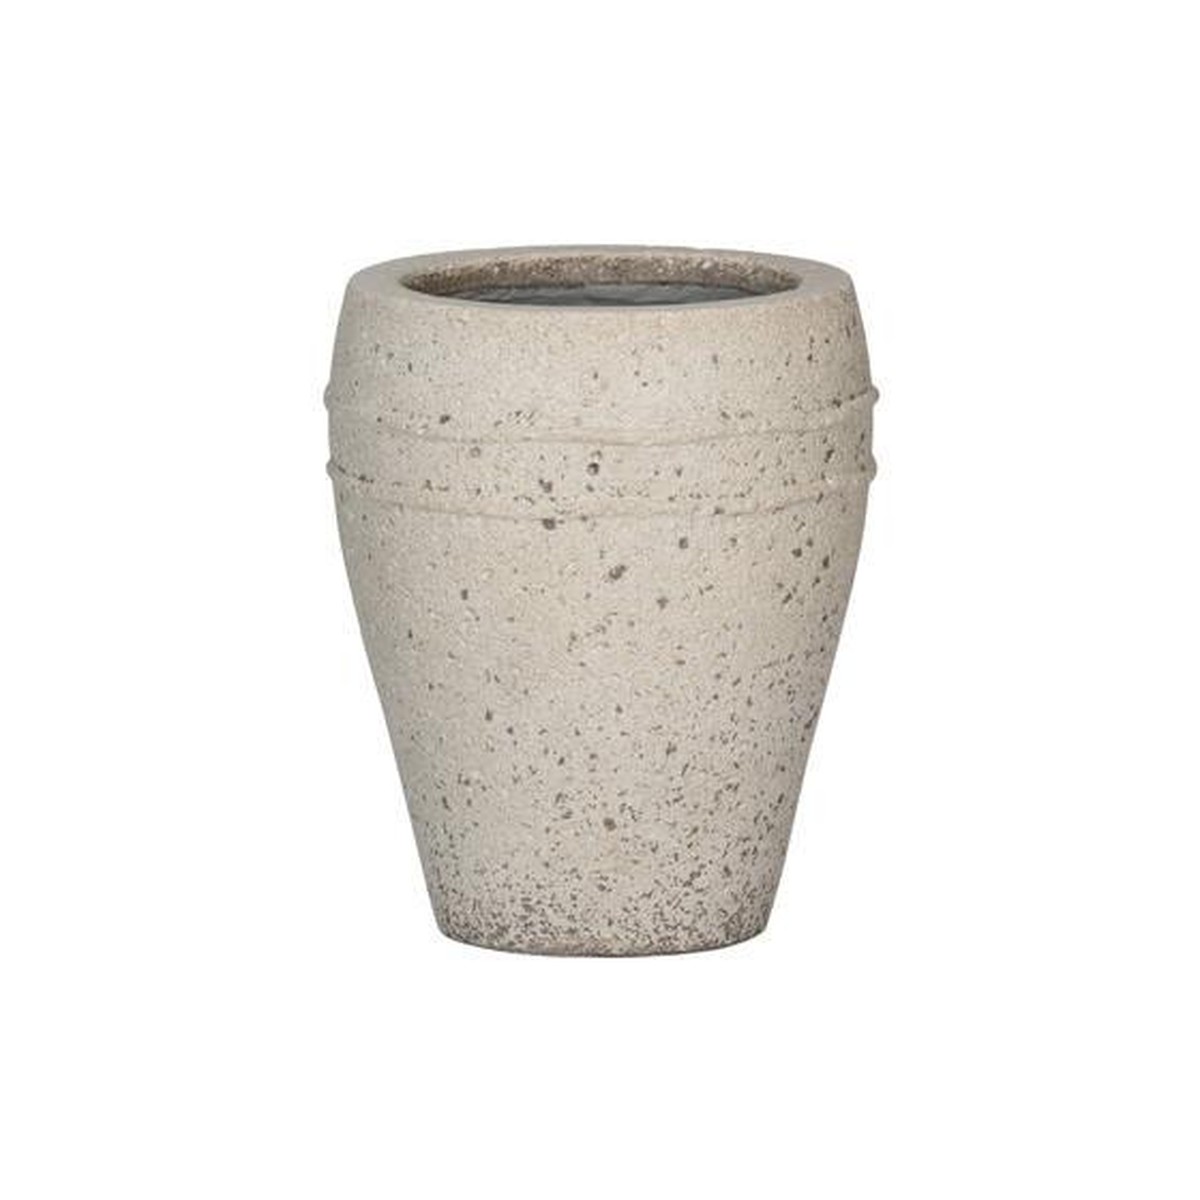 Potterypots Mediterranean Ares, S, Chalk White Beige lin 27X32cm 10L